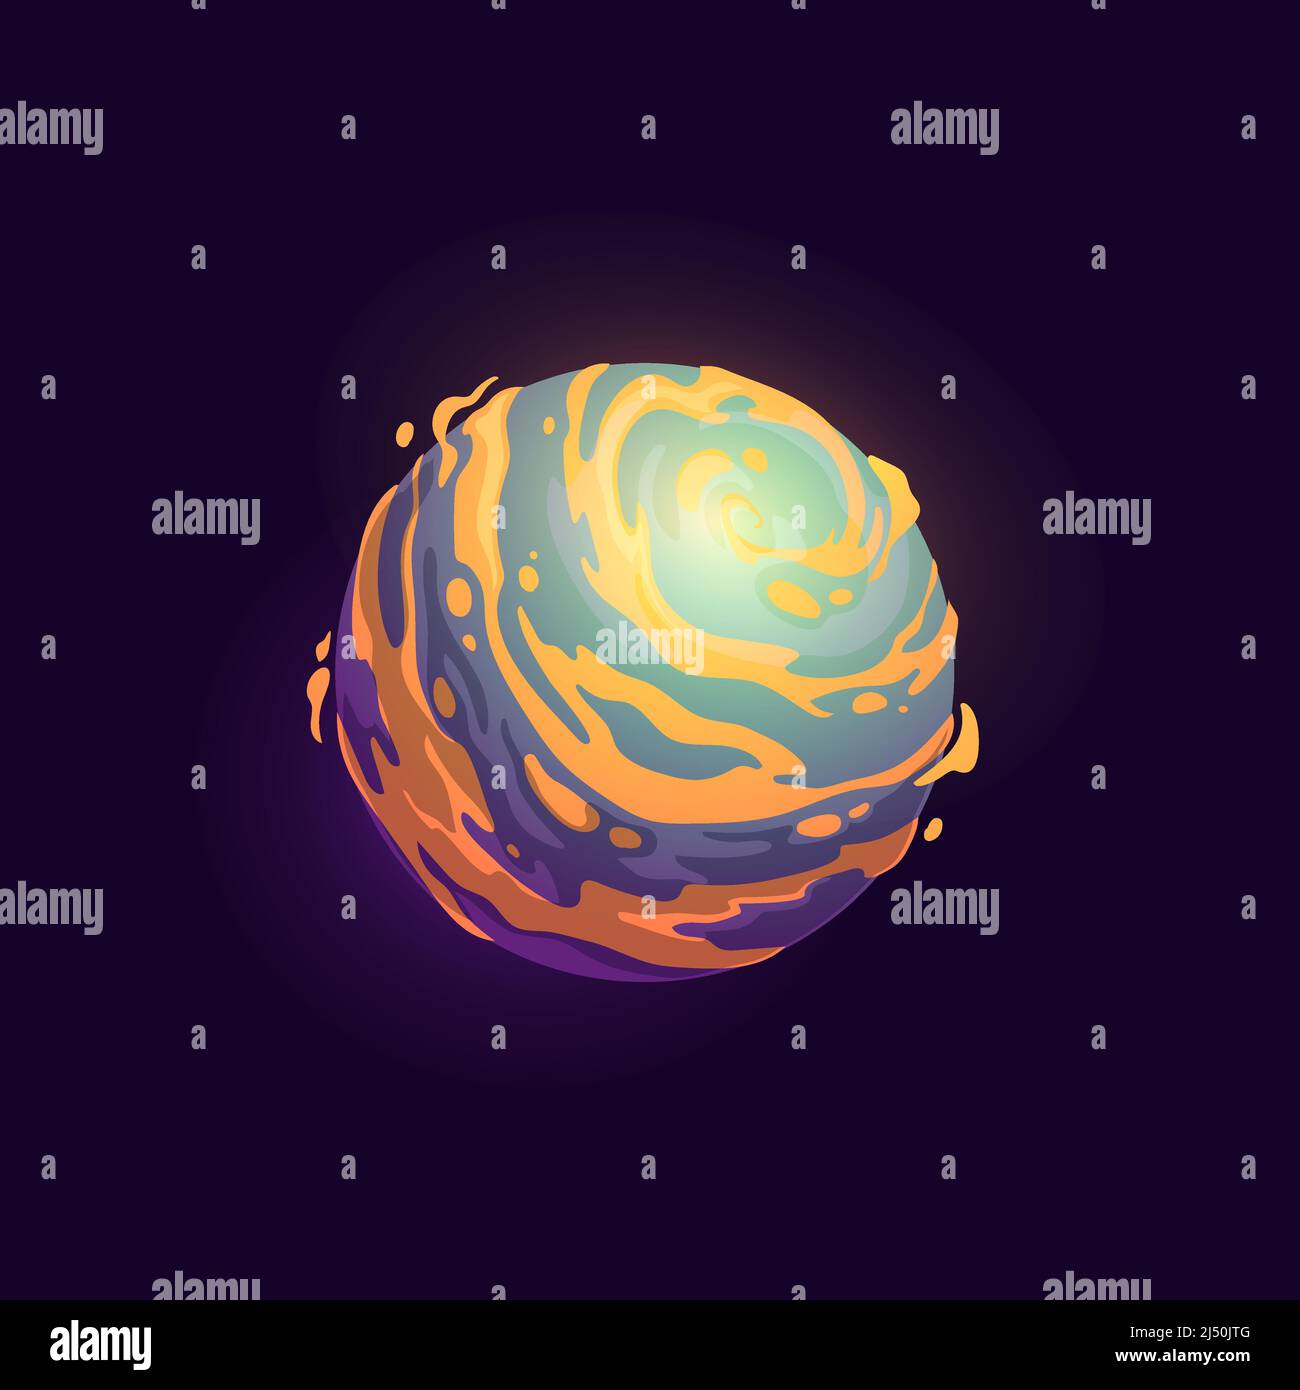 Pianeta spaziale con nebulosa arancione, icona del fumetto vettoriale della galassia fantasy. Pianeta galattico con superficie lavica in un universo fantastico, mondo spaziale con crateri ardenti e meteore di fuoco o asteroidi cosmici Illustrazione Vettoriale